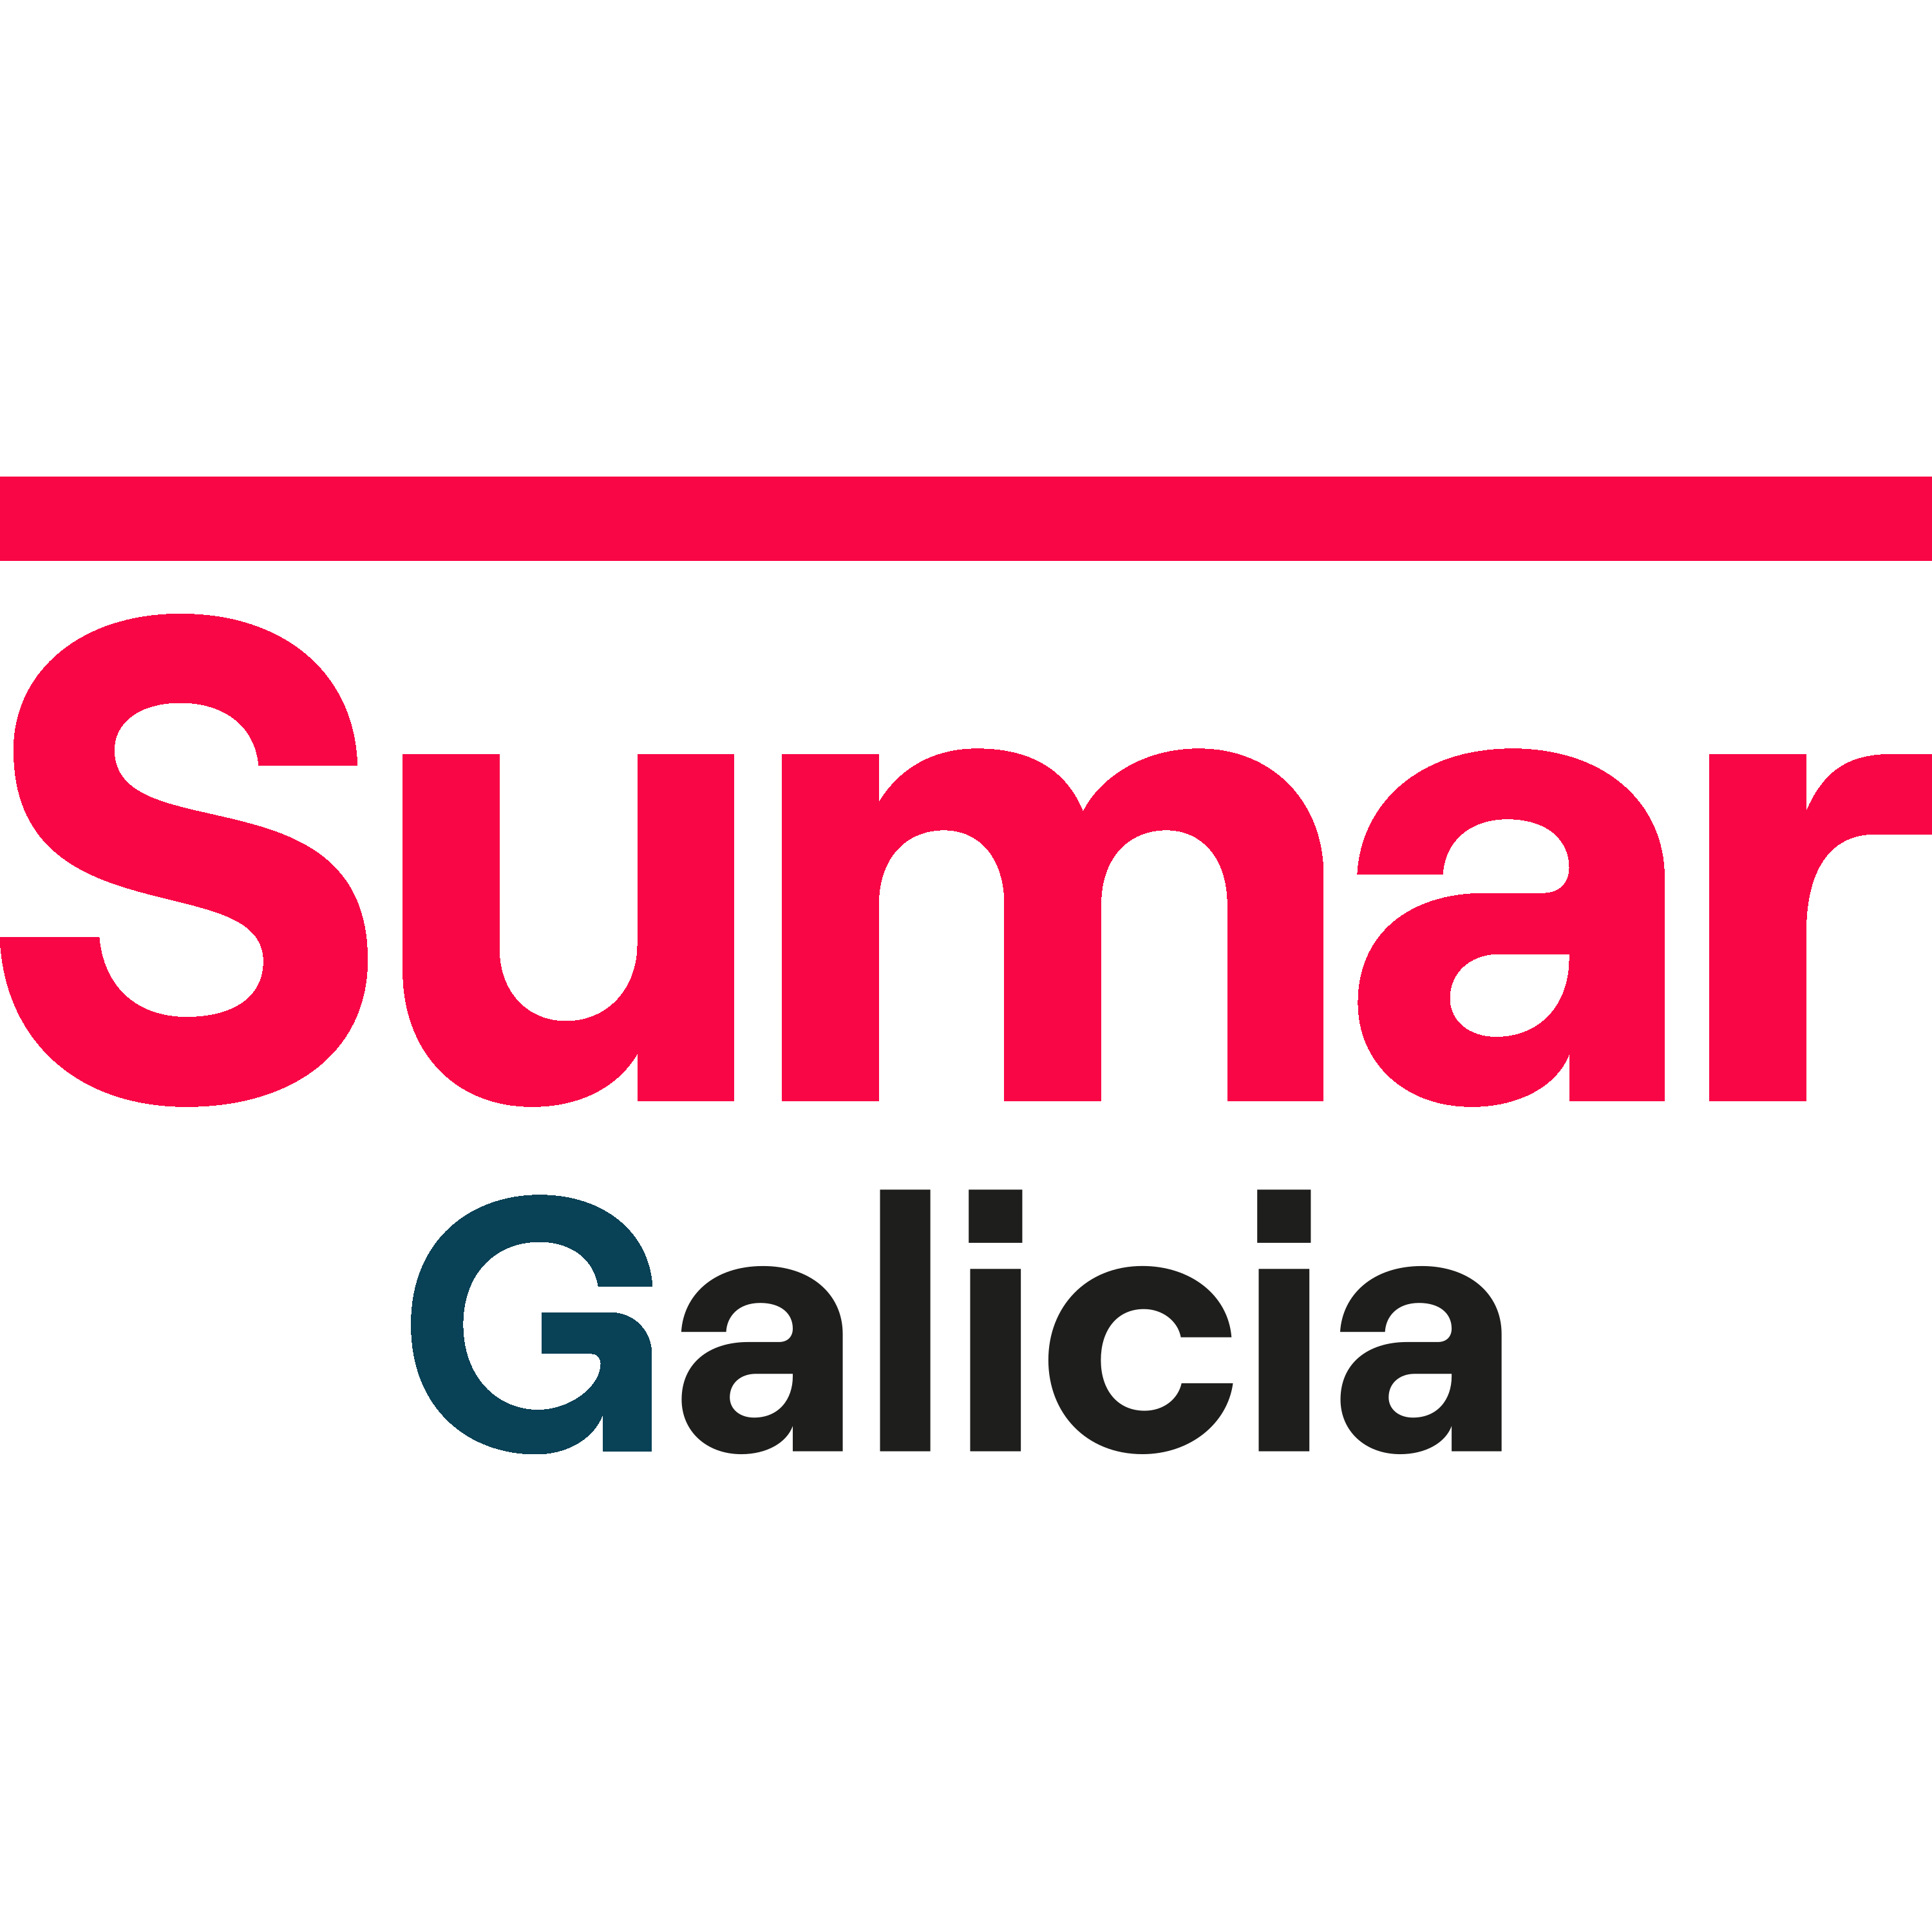 Sumar Galicia Logo  Transparent Gallery